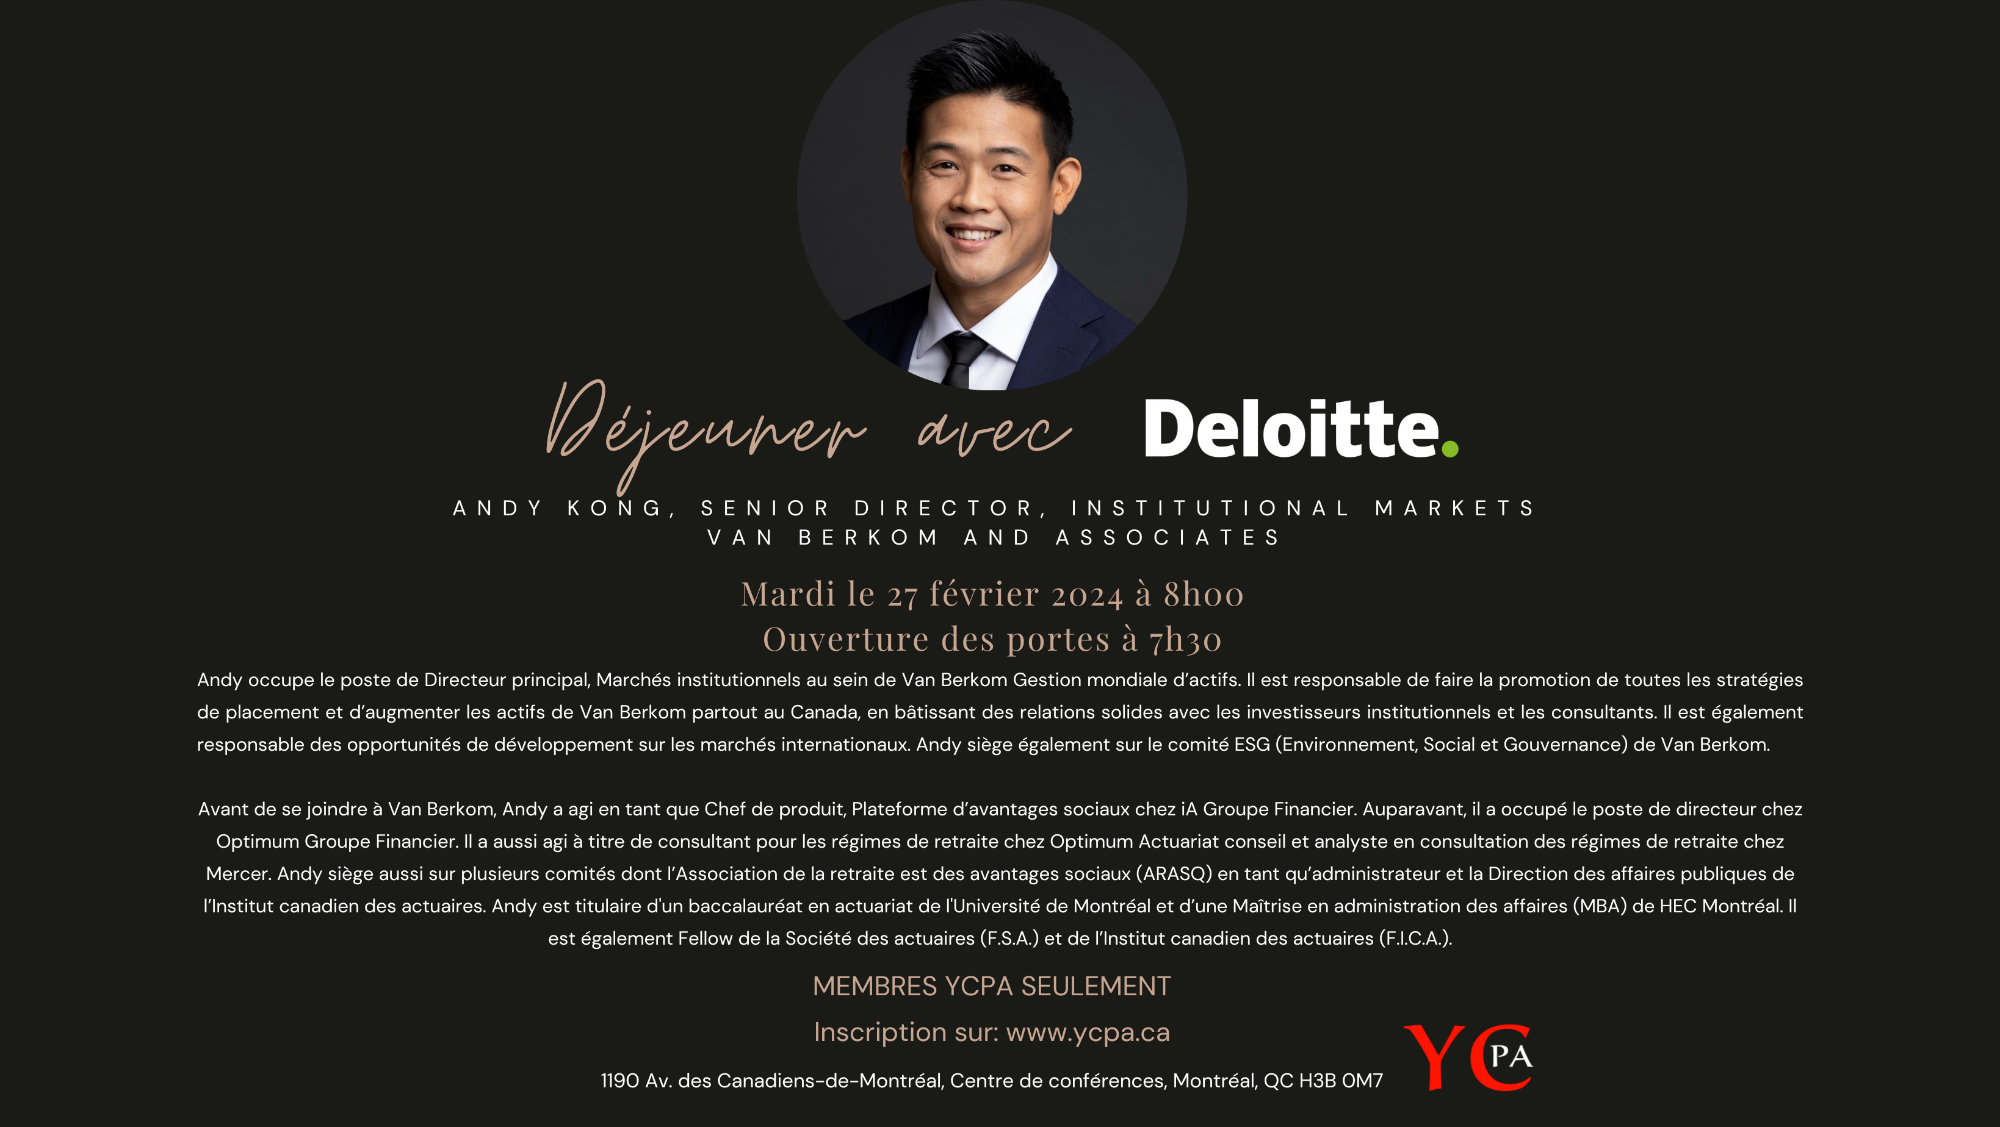 Déjeuner avec Deloitte -  Andy Kong, Directeur principal, Marchés institutionnels chez Van Berkom Gestion mondiale d’actifs